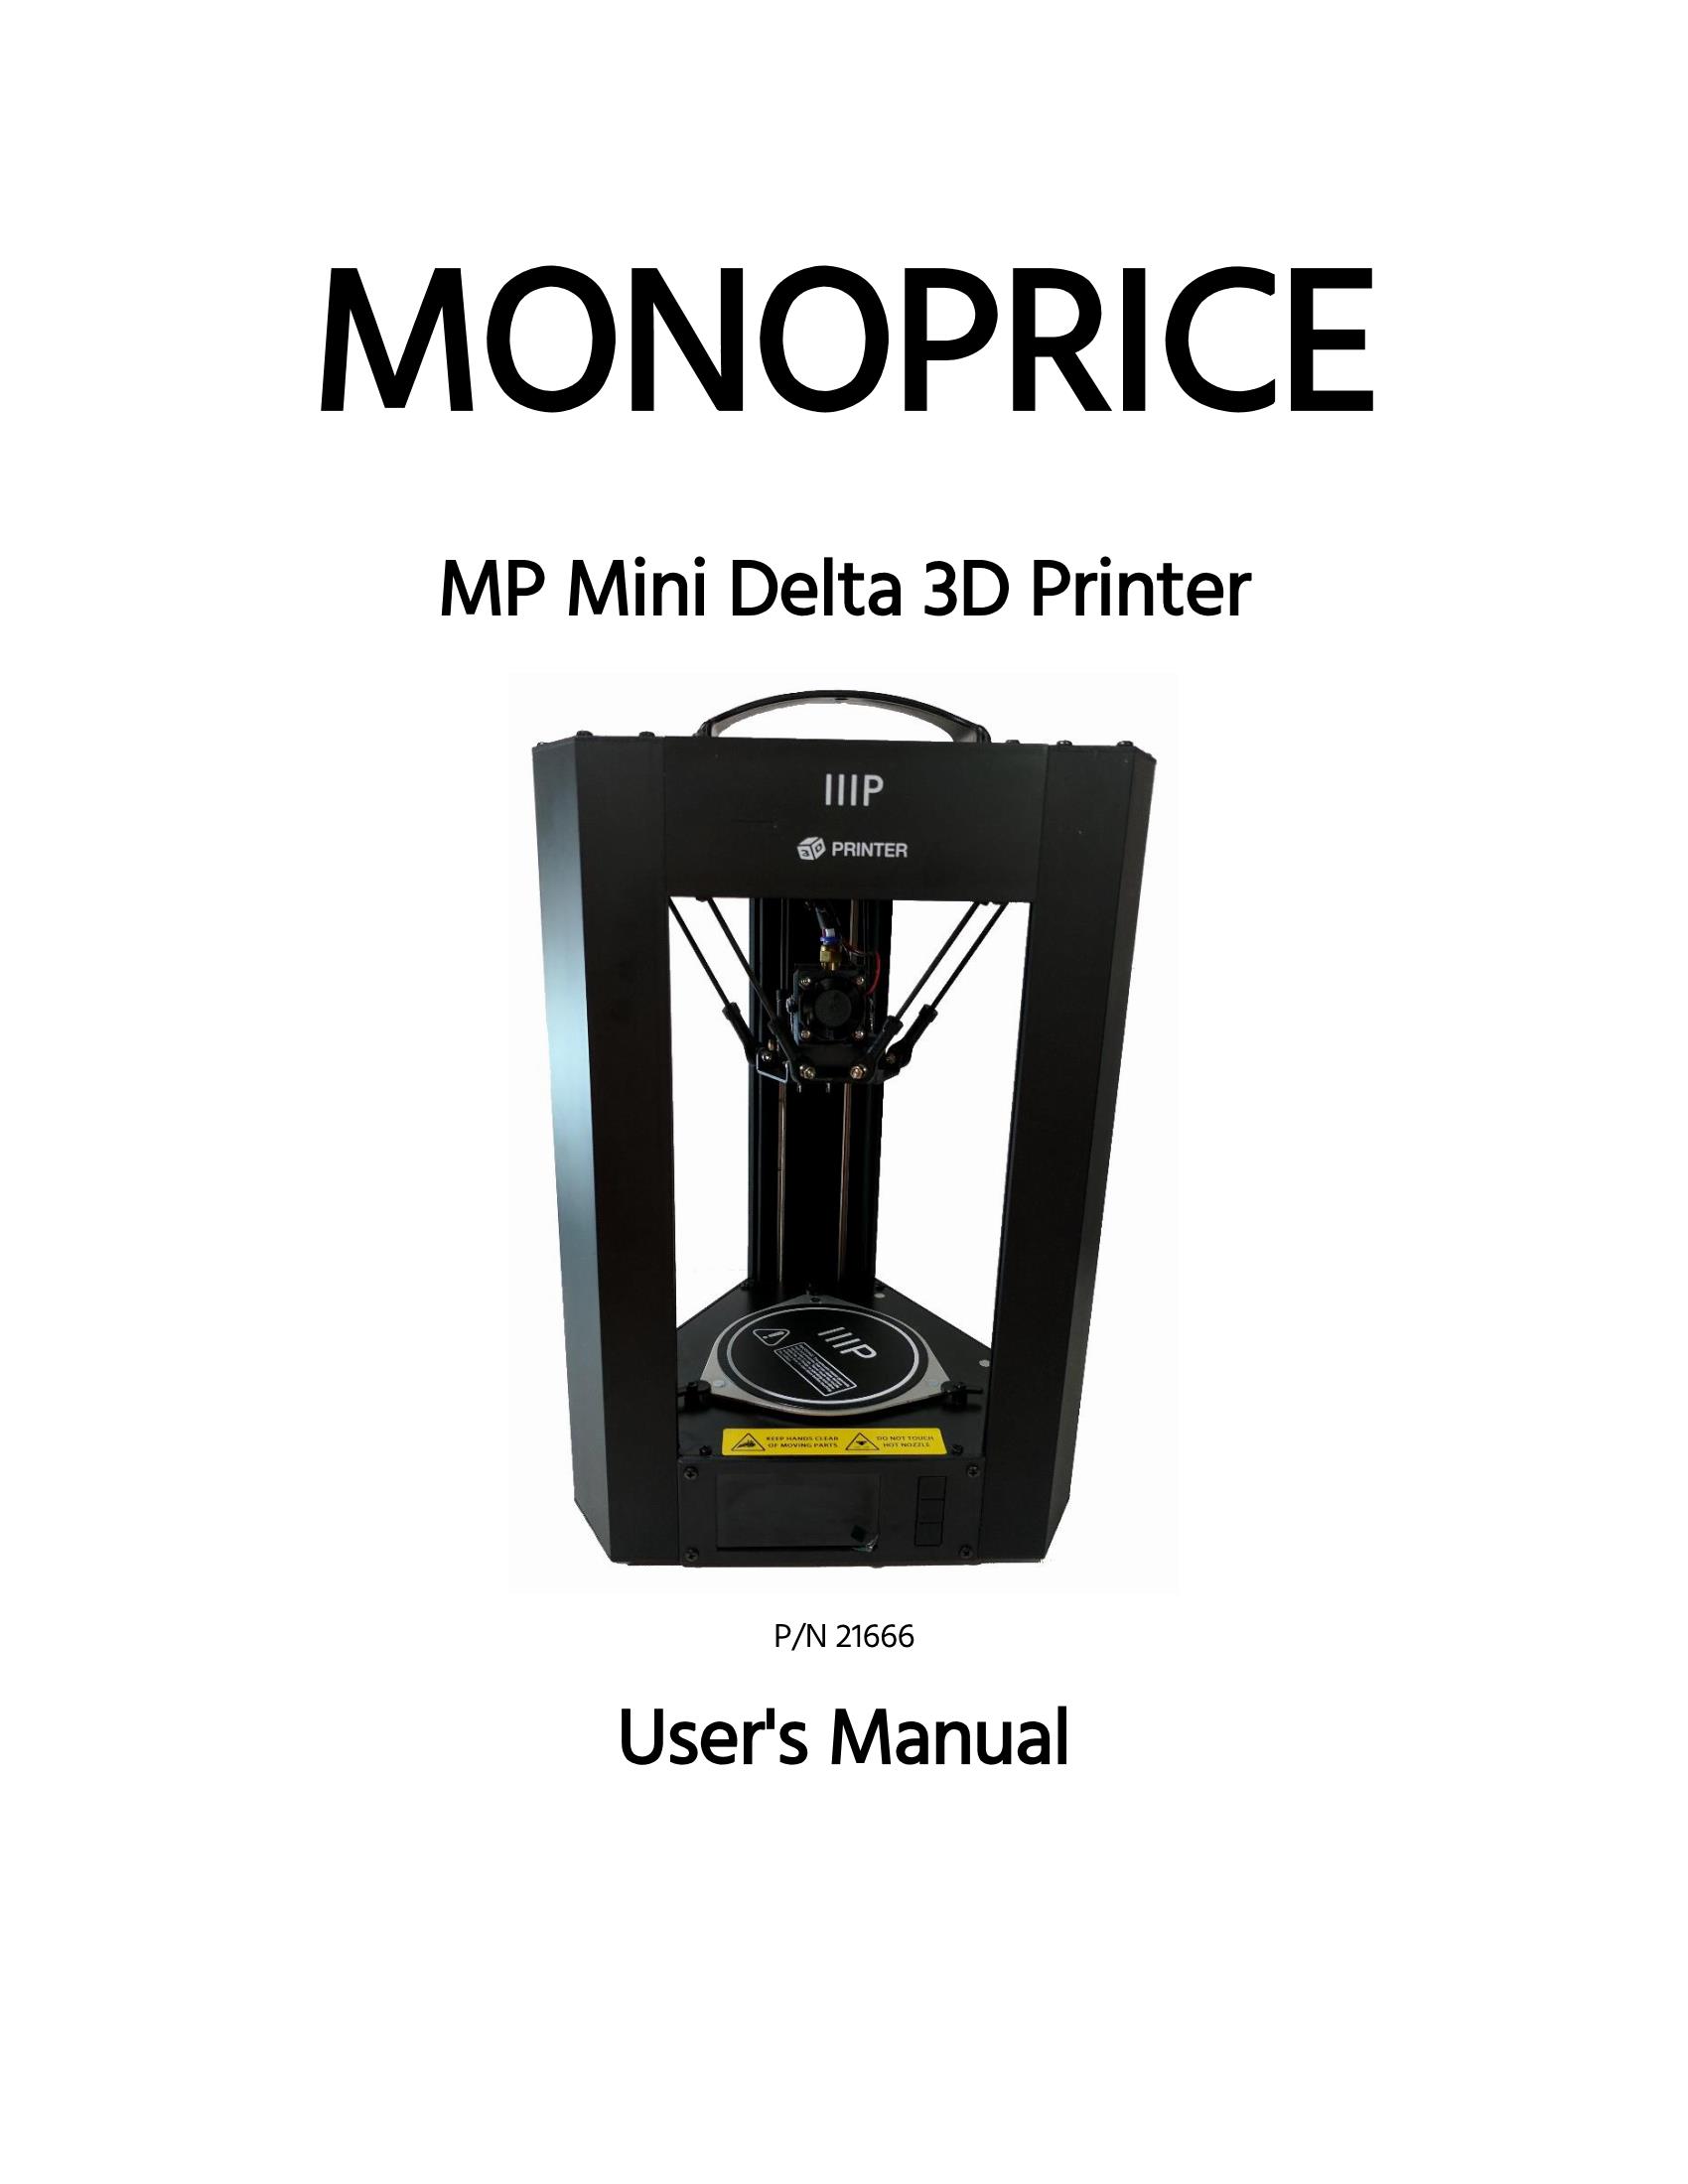 MP Mini Delta User's Manual - Page 1